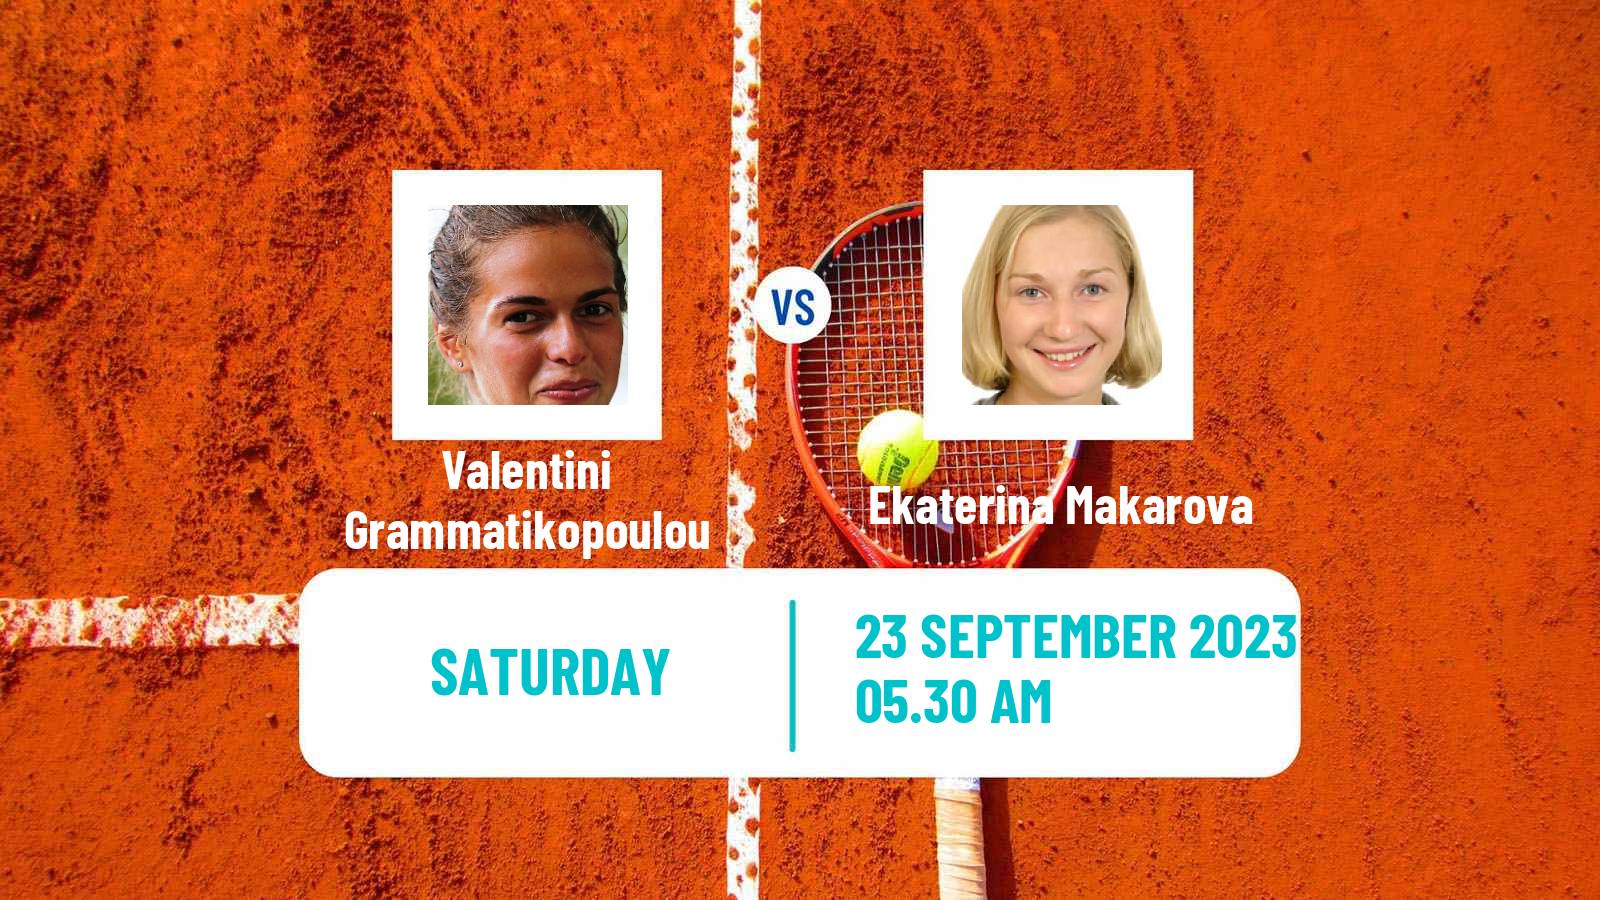 Tennis ITF W25 Slobozia Women Valentini Grammatikopoulou - Ekaterina Makarova